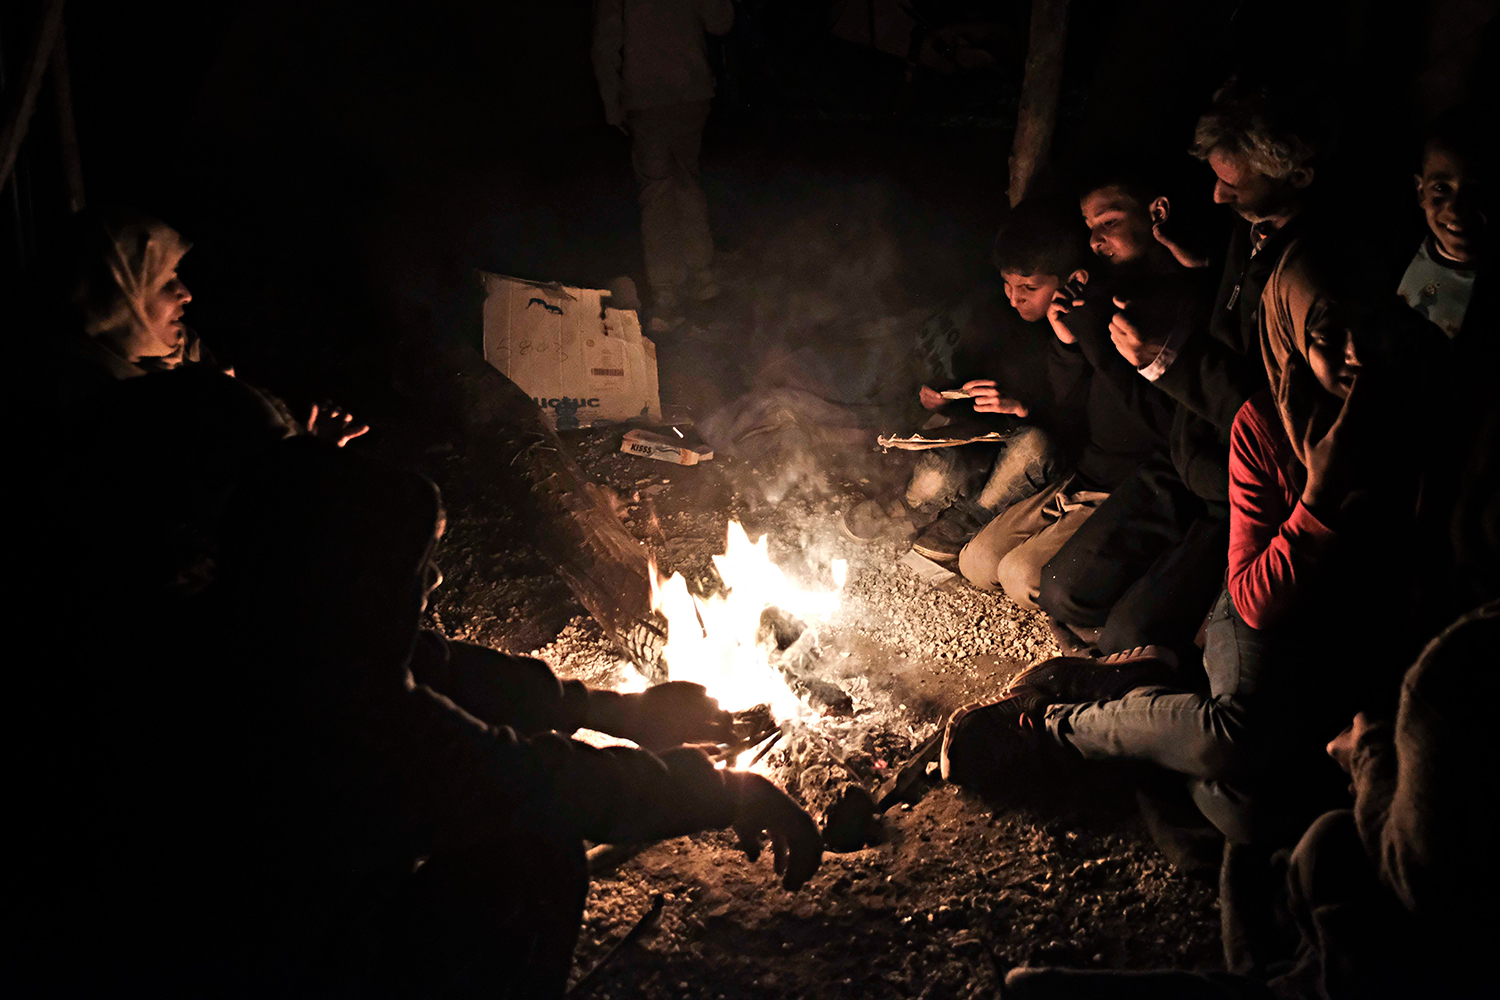 Les famílies es reuneixen al voltant de les fogueres al vespre. Cremen la fusta que aconsegueixen i tota mena de plàstics